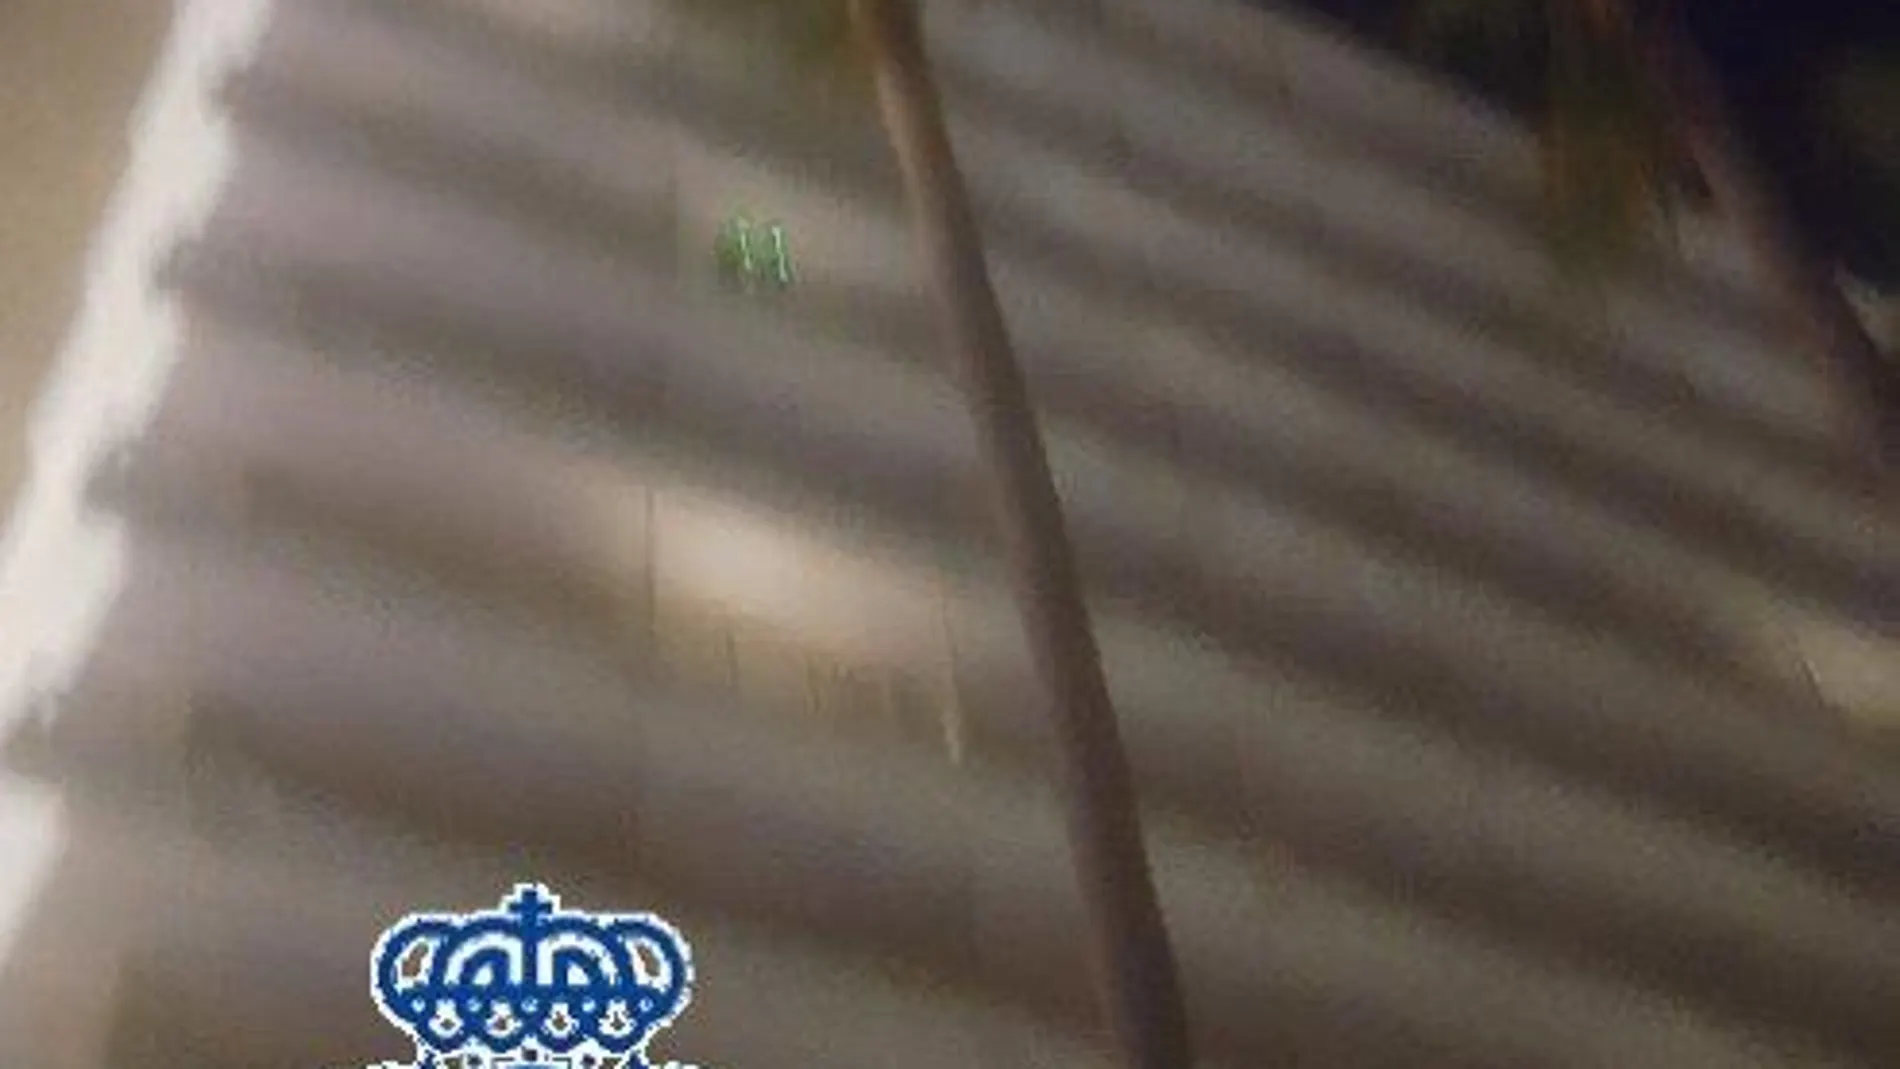 Imagen facilitada por la Policía en la que se ven los dos punteros láser en una terraza del hotel